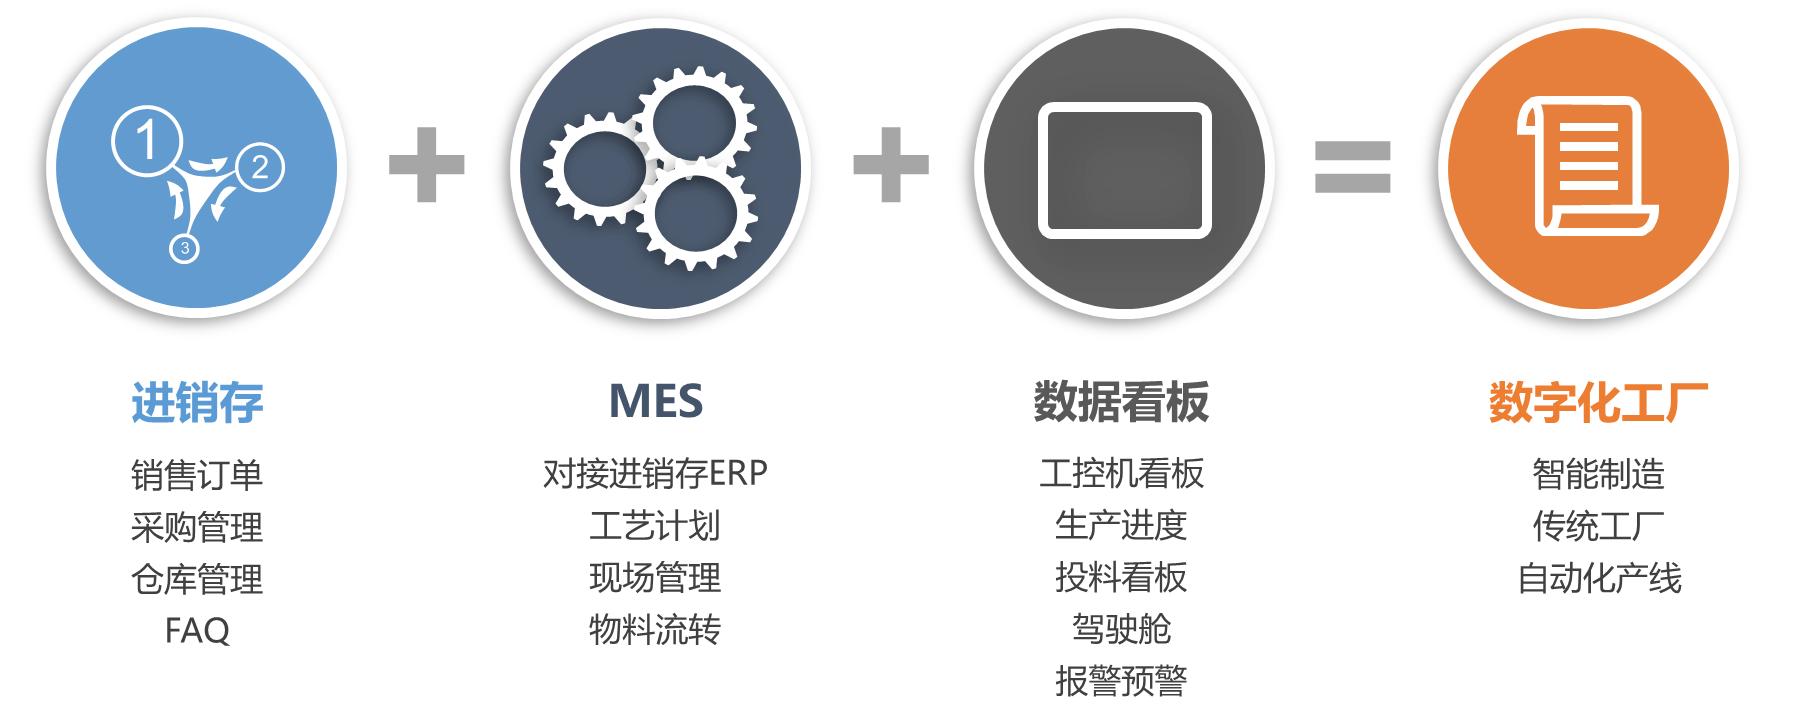 MES系统框架图